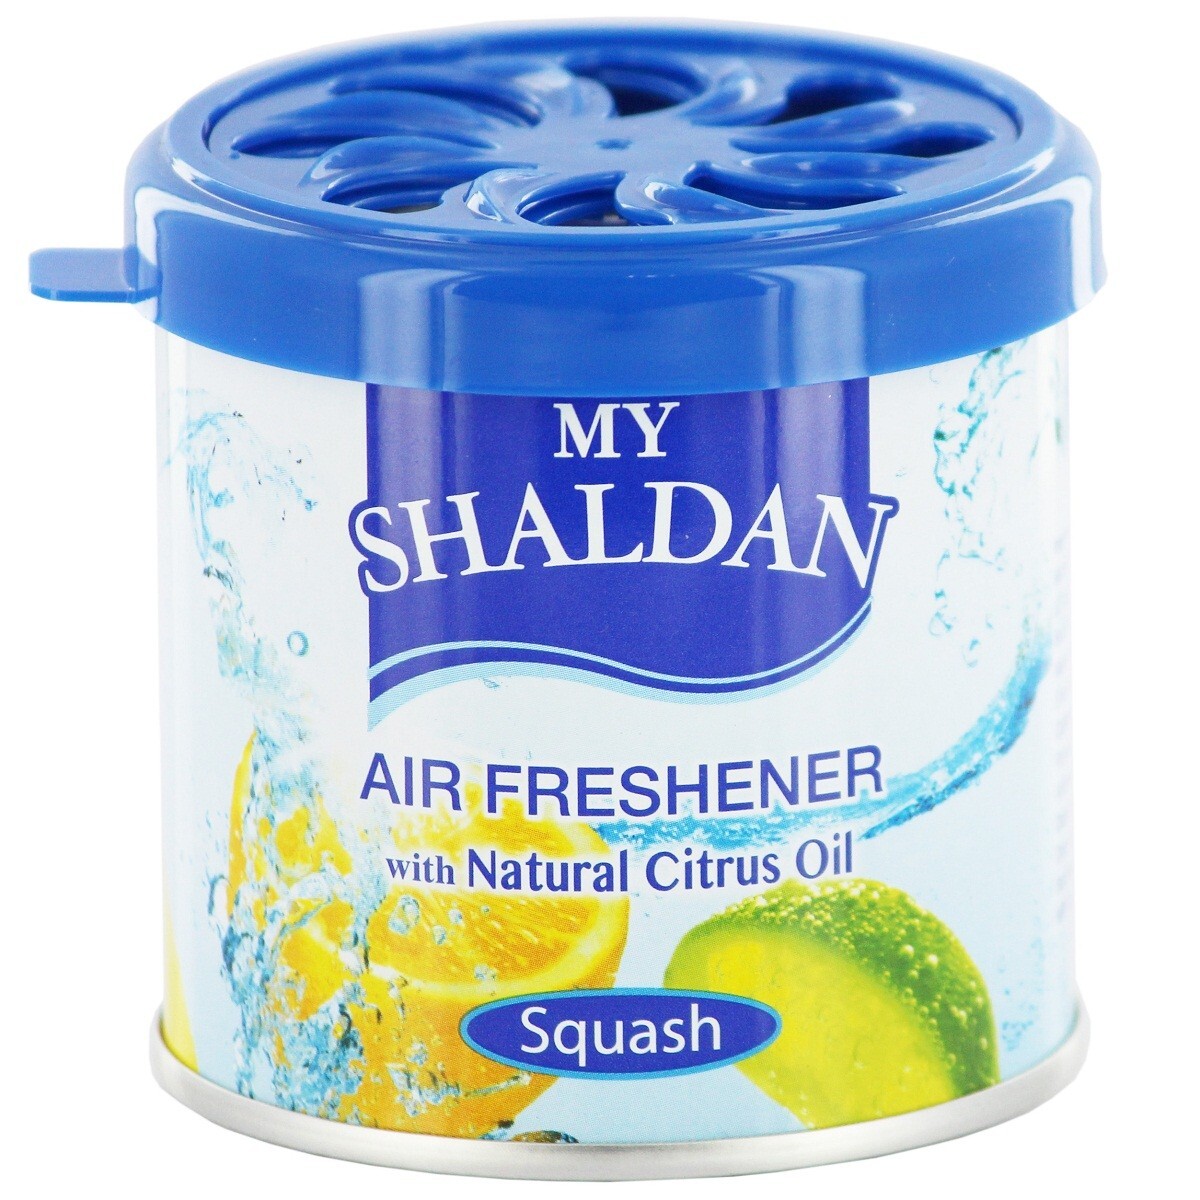 My Shaldan Air Freshener Squash 80g